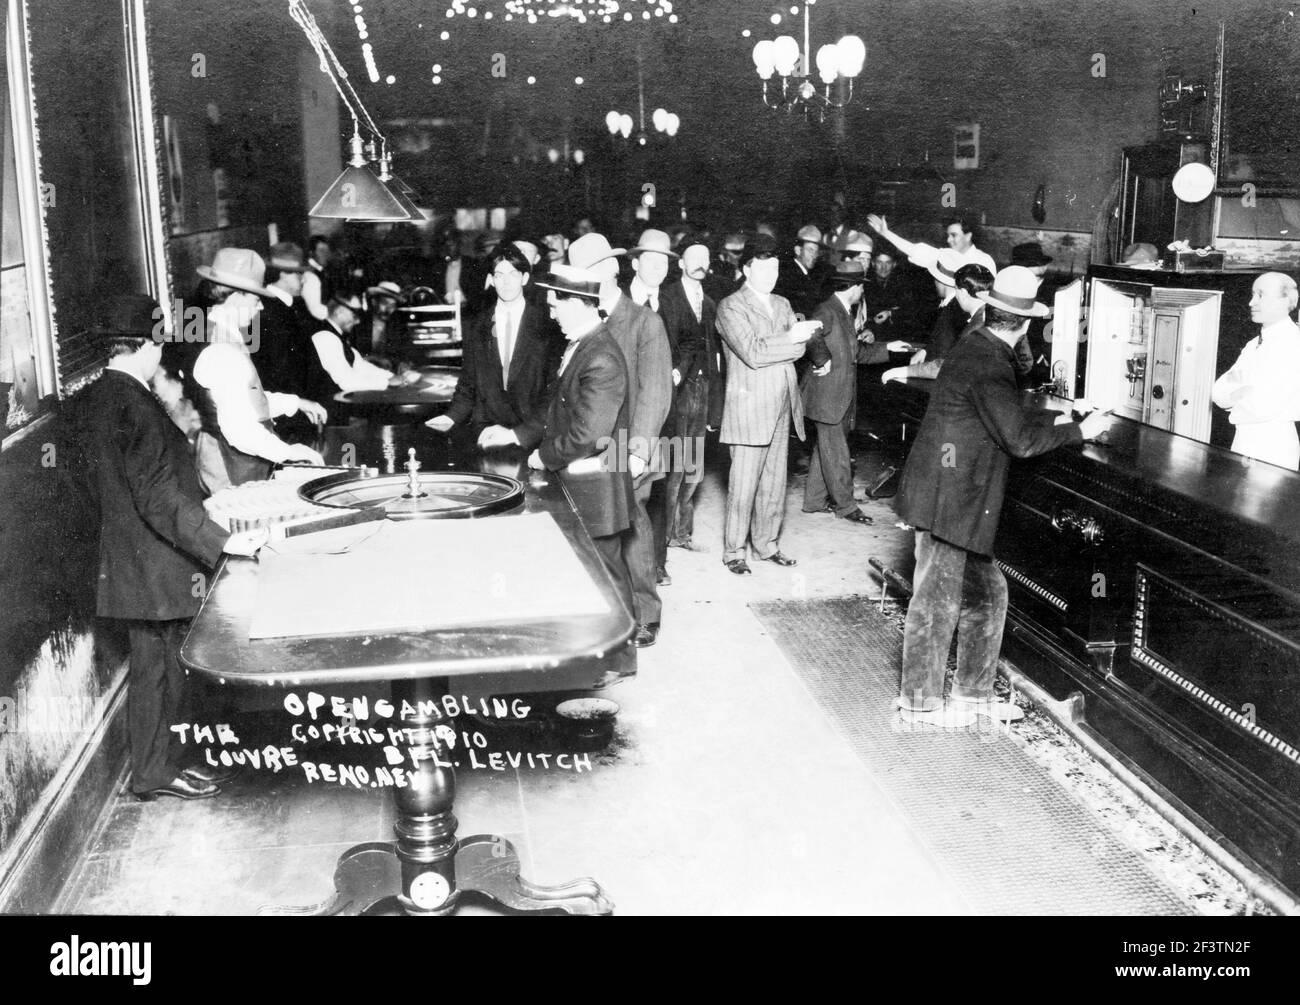 Jeux de hasard ouverts, le Louvre, Reno, Nevada - vue dans le casino de jeu, table de roulette et bar en premier plan, 1910 Banque D'Images